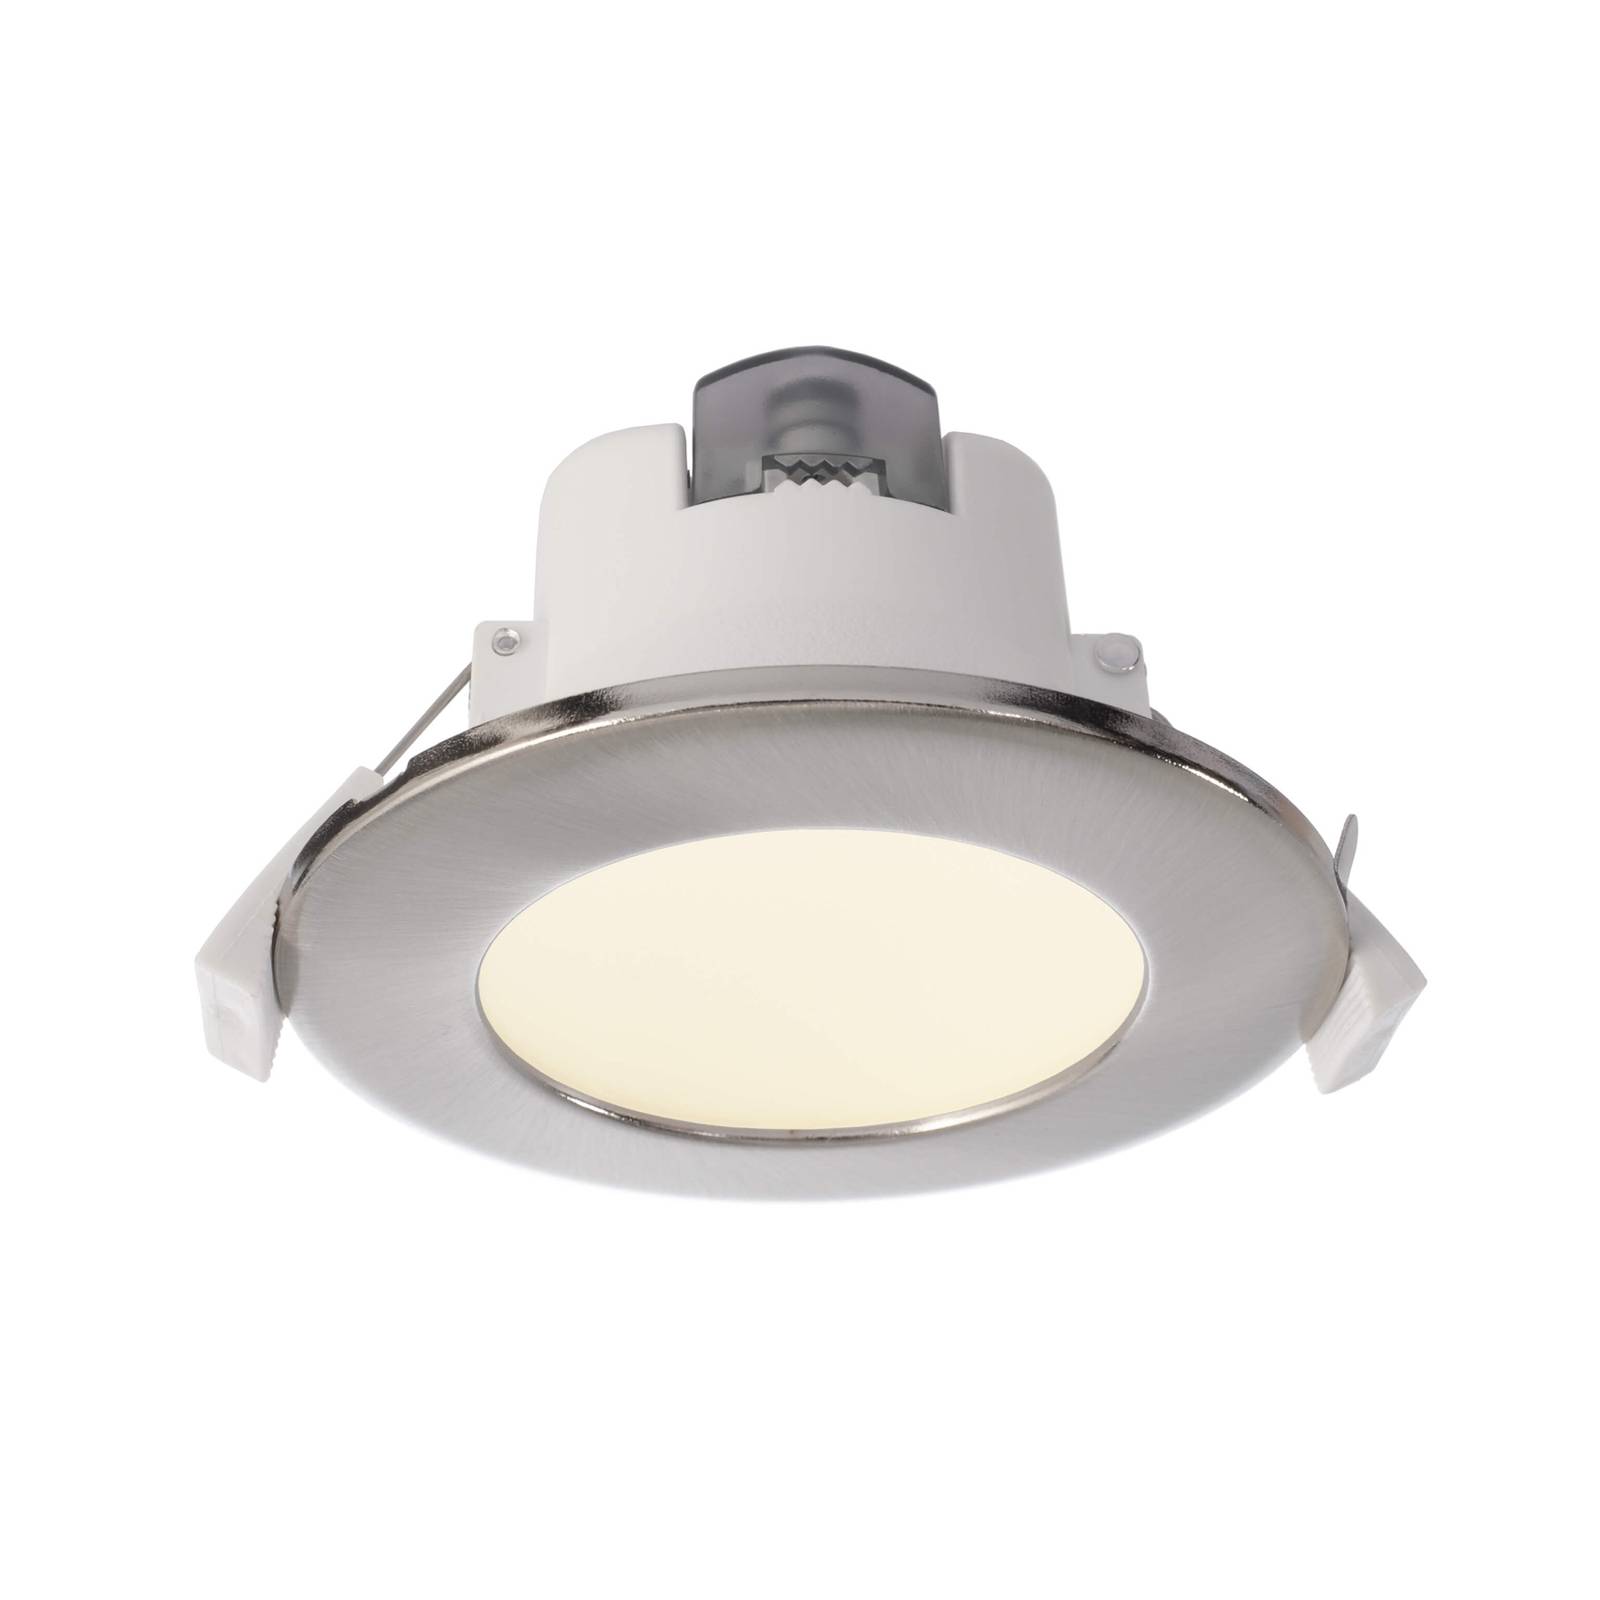 Lampe encastrable LED Acrux 68 blanche, Ø 9,5 cm